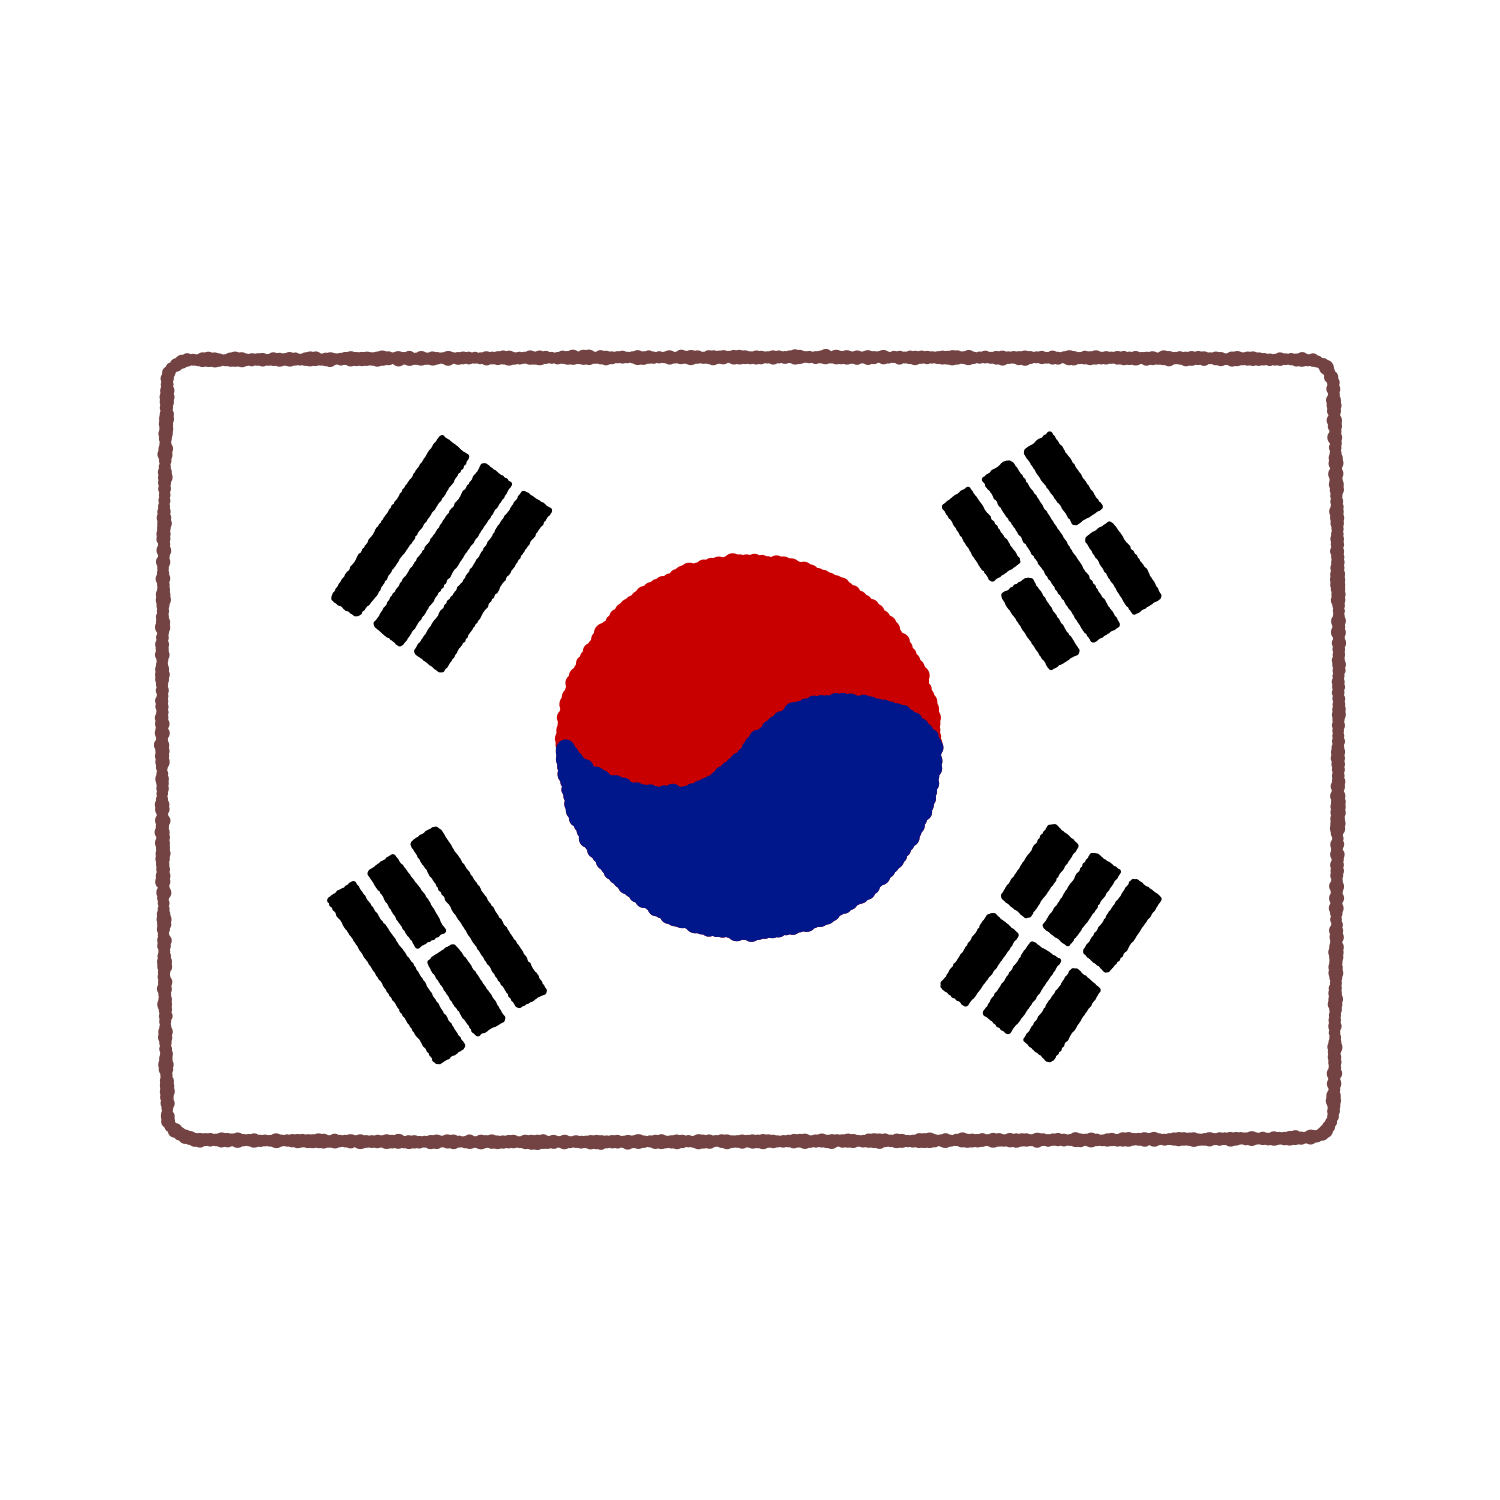 大韓民国国旗のイラスト